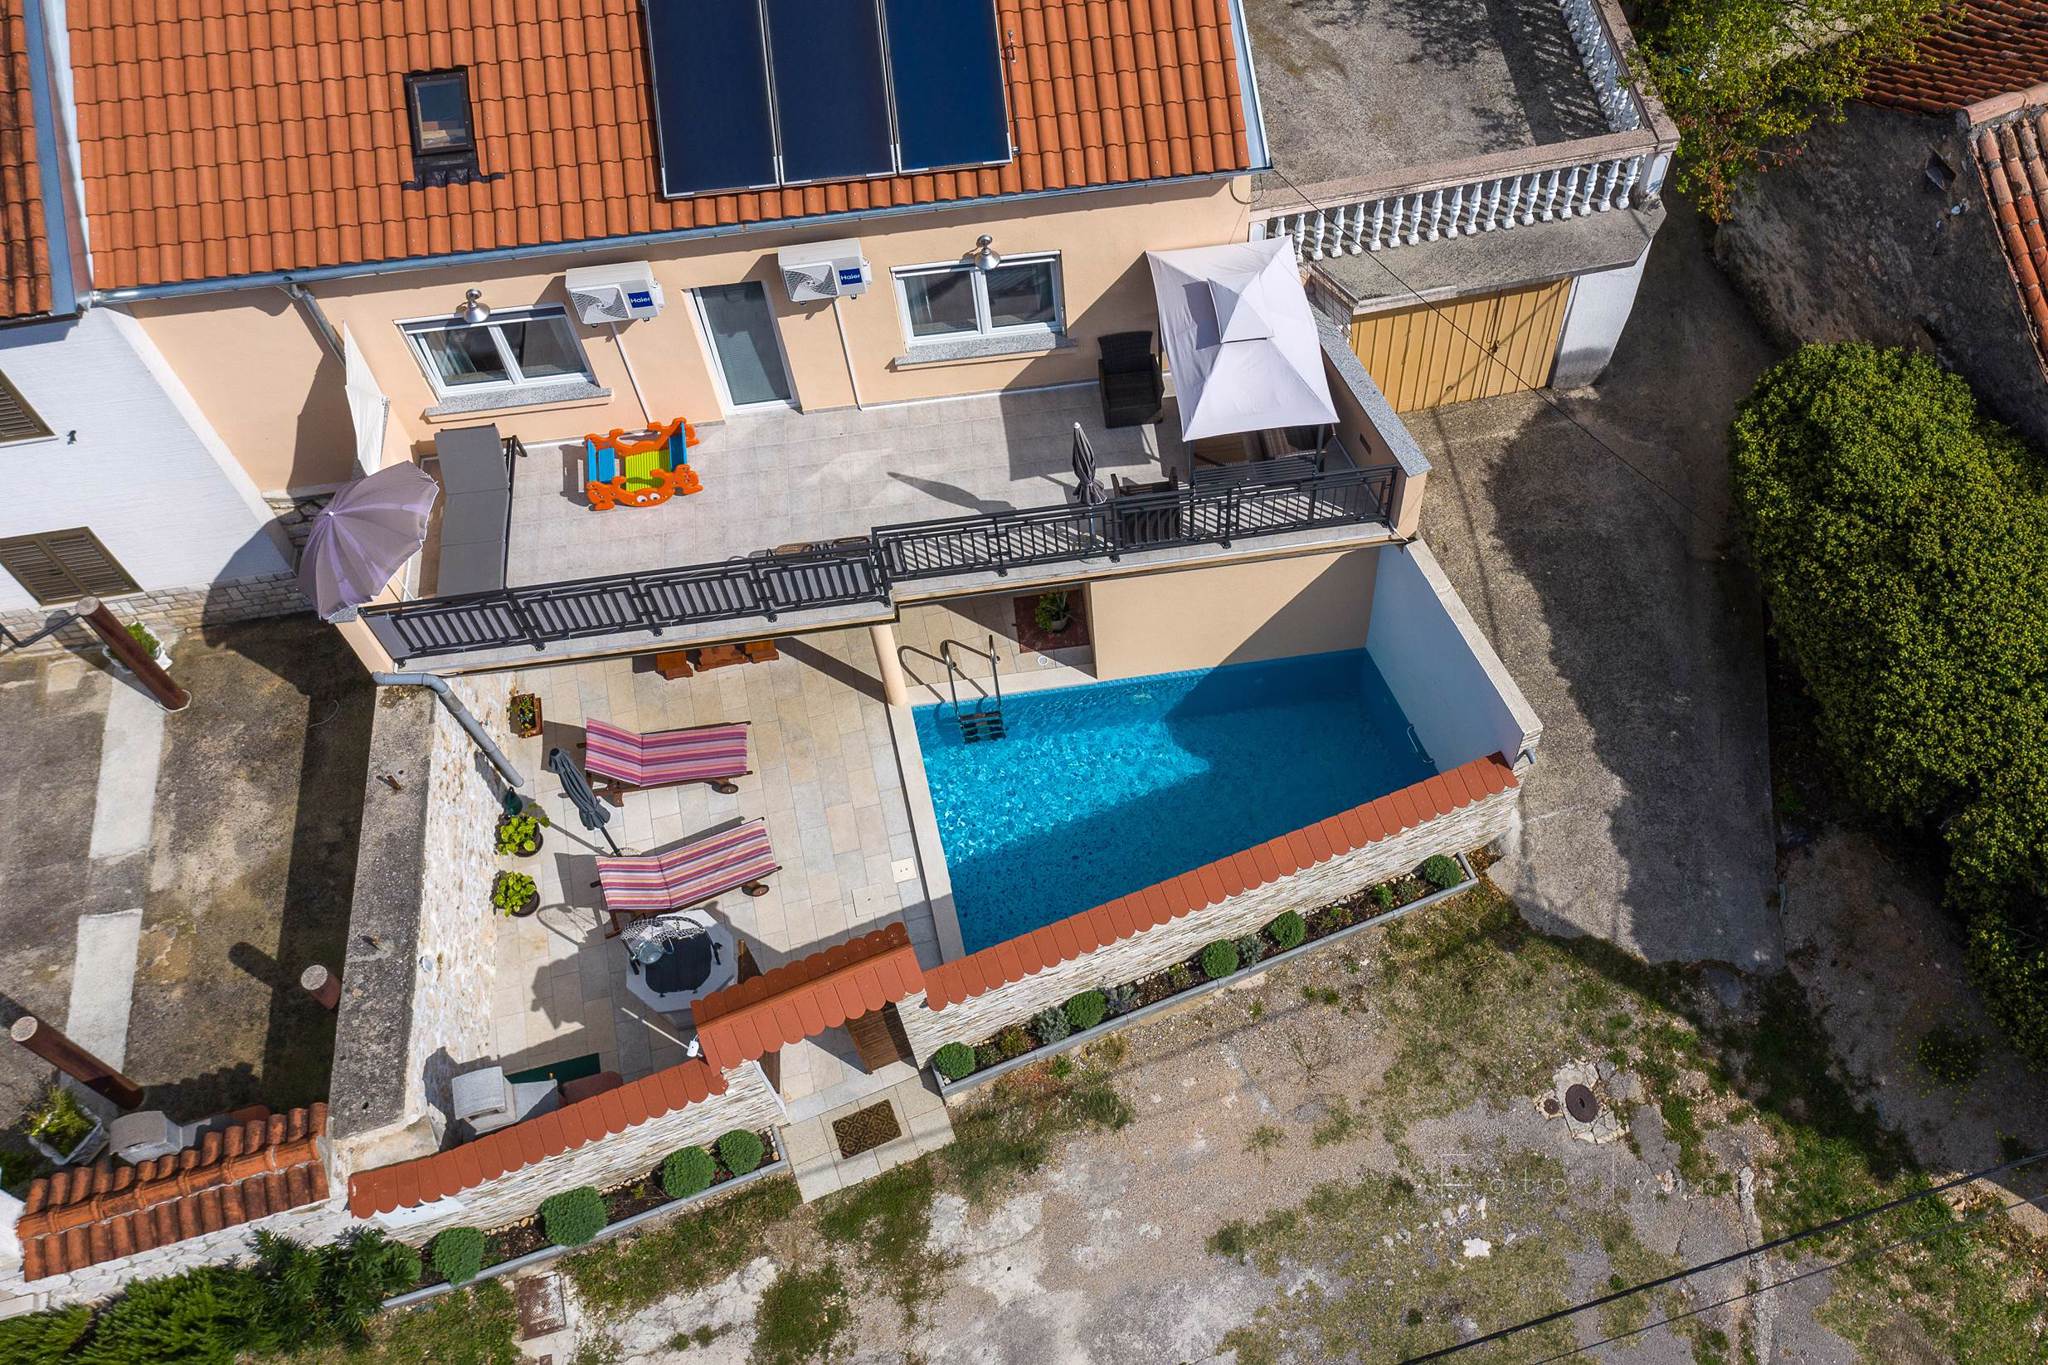 Villa Mit Garten und Pool Ferienhaus in Kroatien